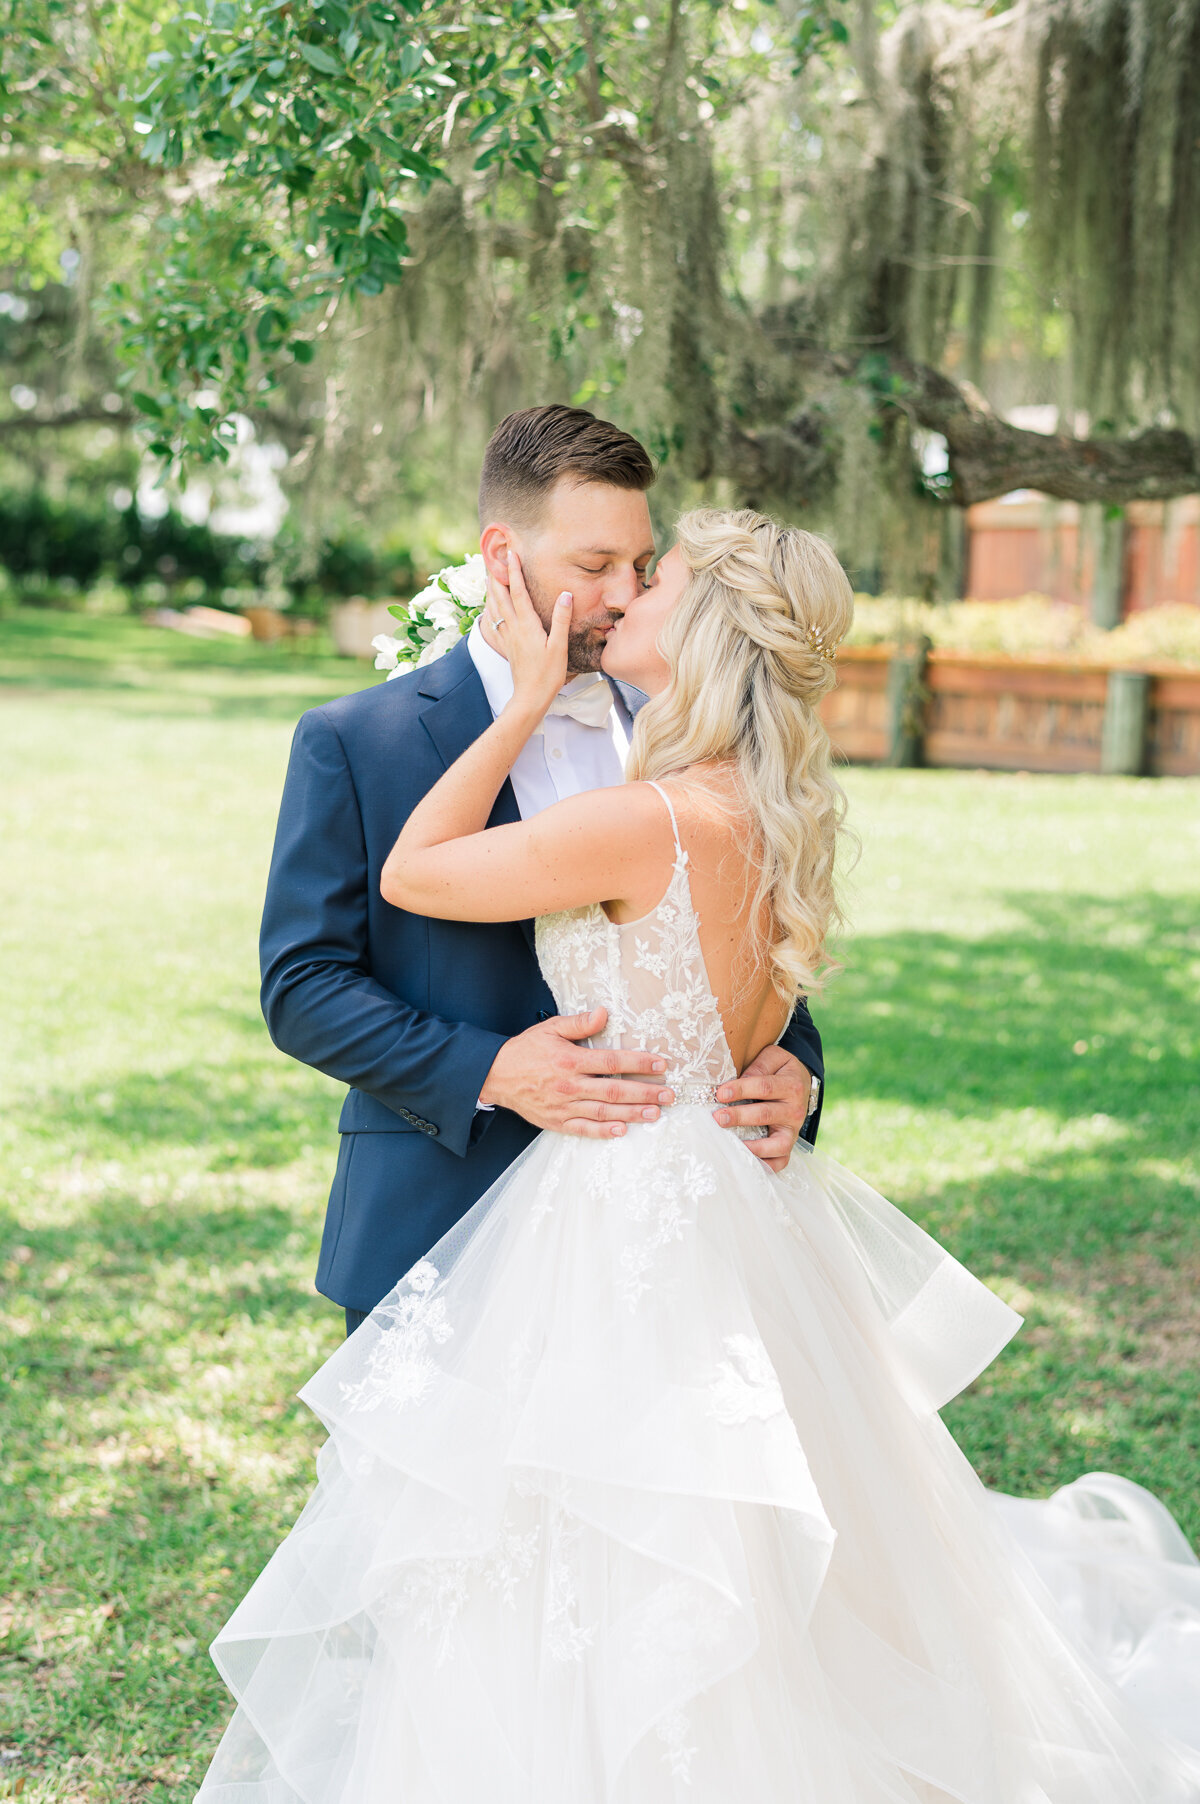 Meg & Nick Up the Creek Farms Wedding | Lisa Marshall Photography